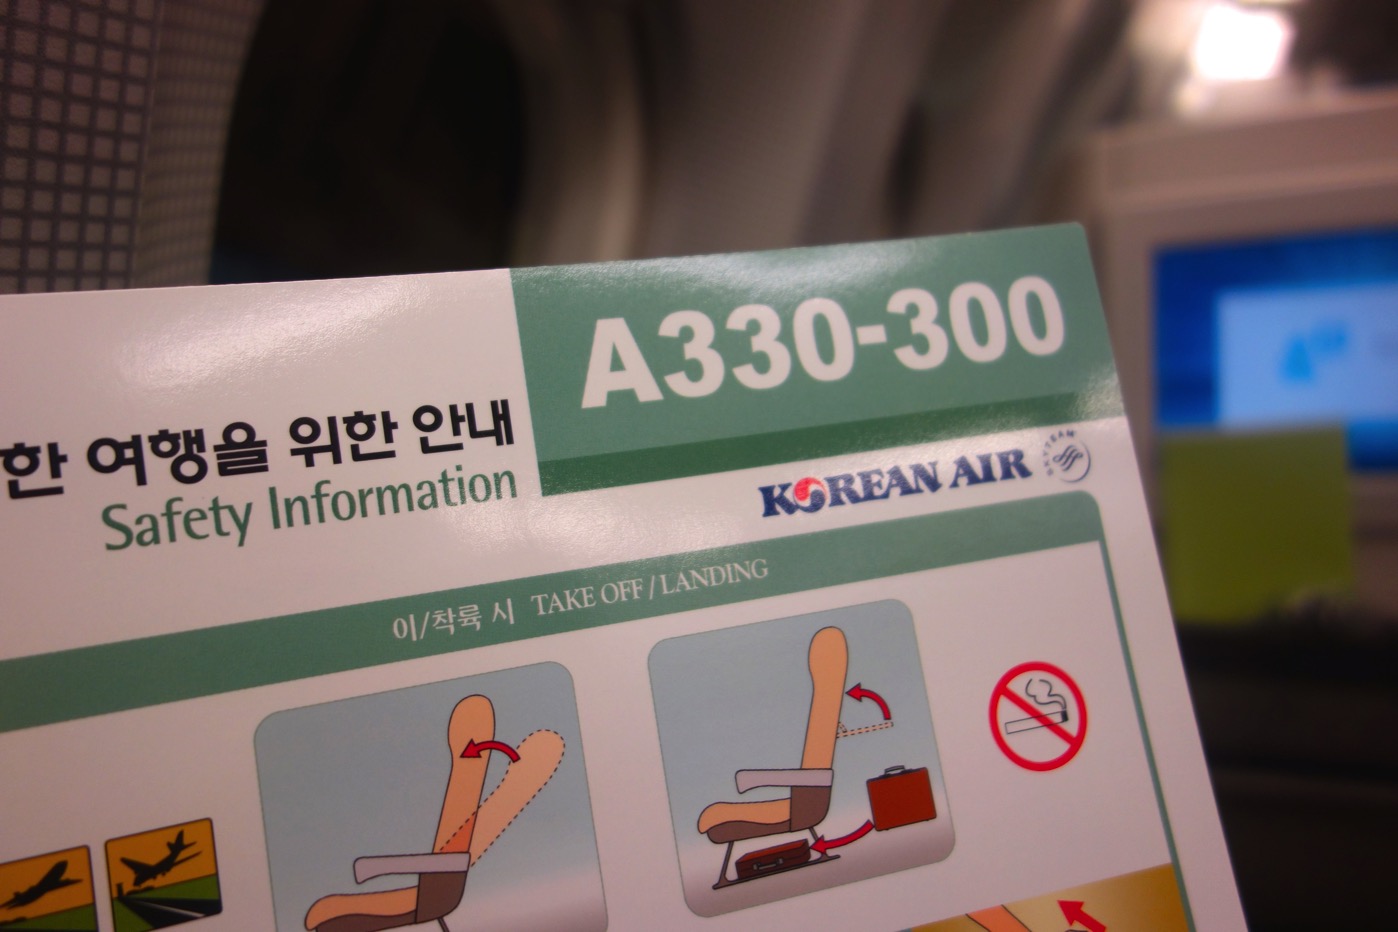 KoreanAir A330-300